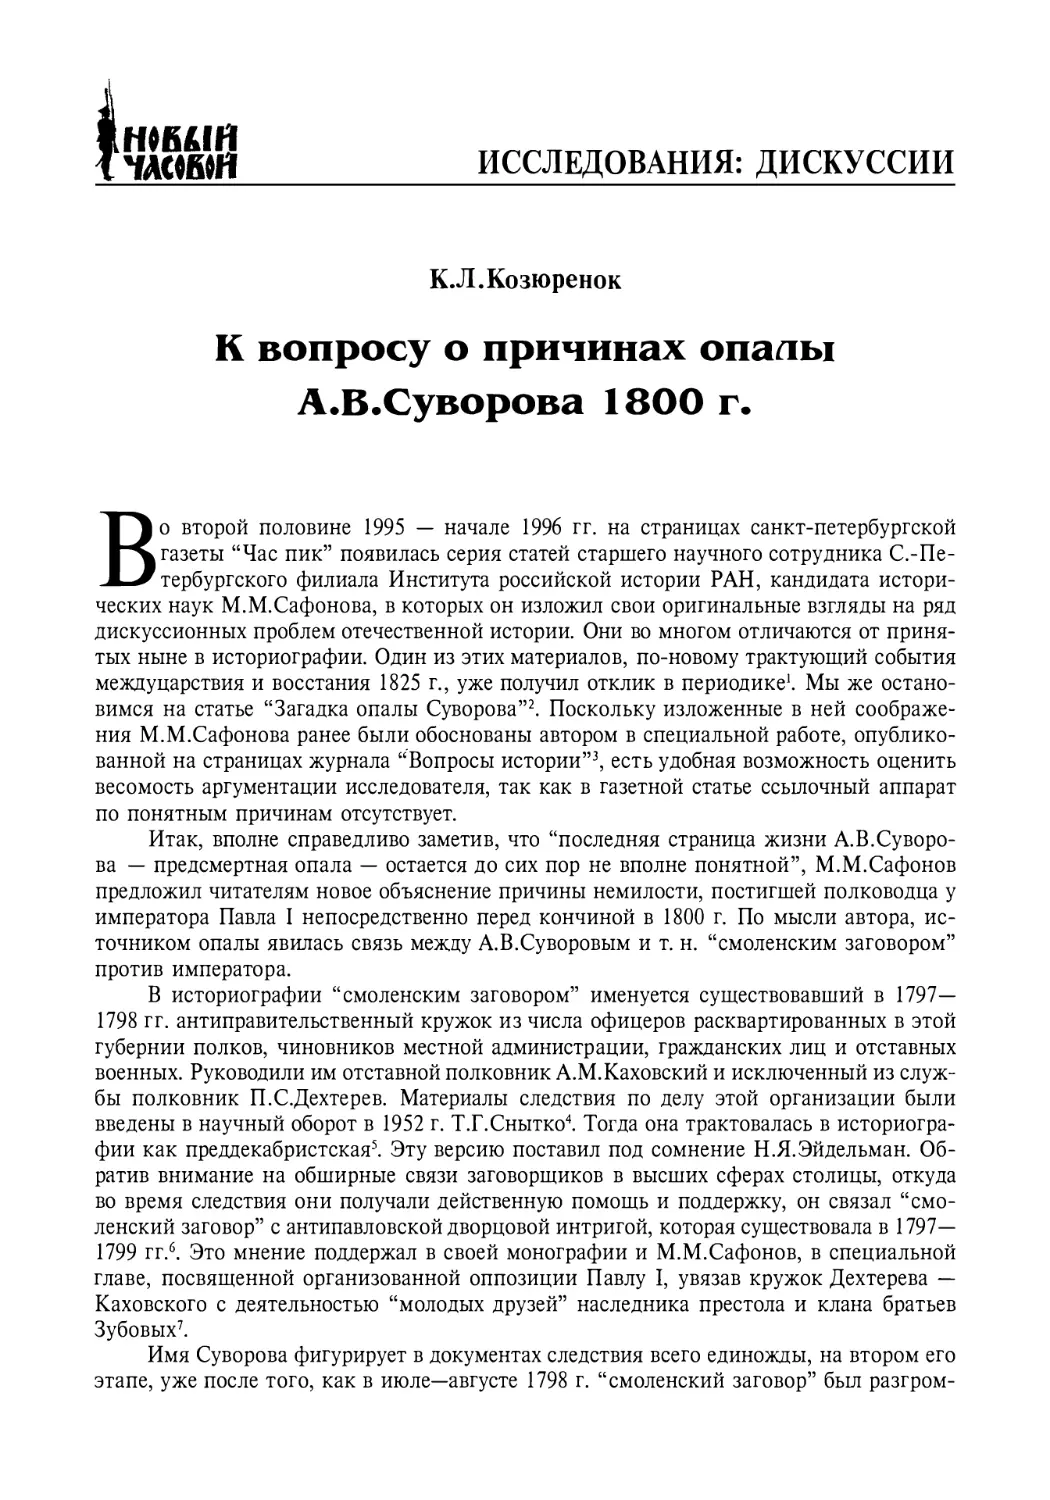 Дискуссии
К.Л. Козюренок. К вопросу о причинах опалы А.В.Суворова 1800 г